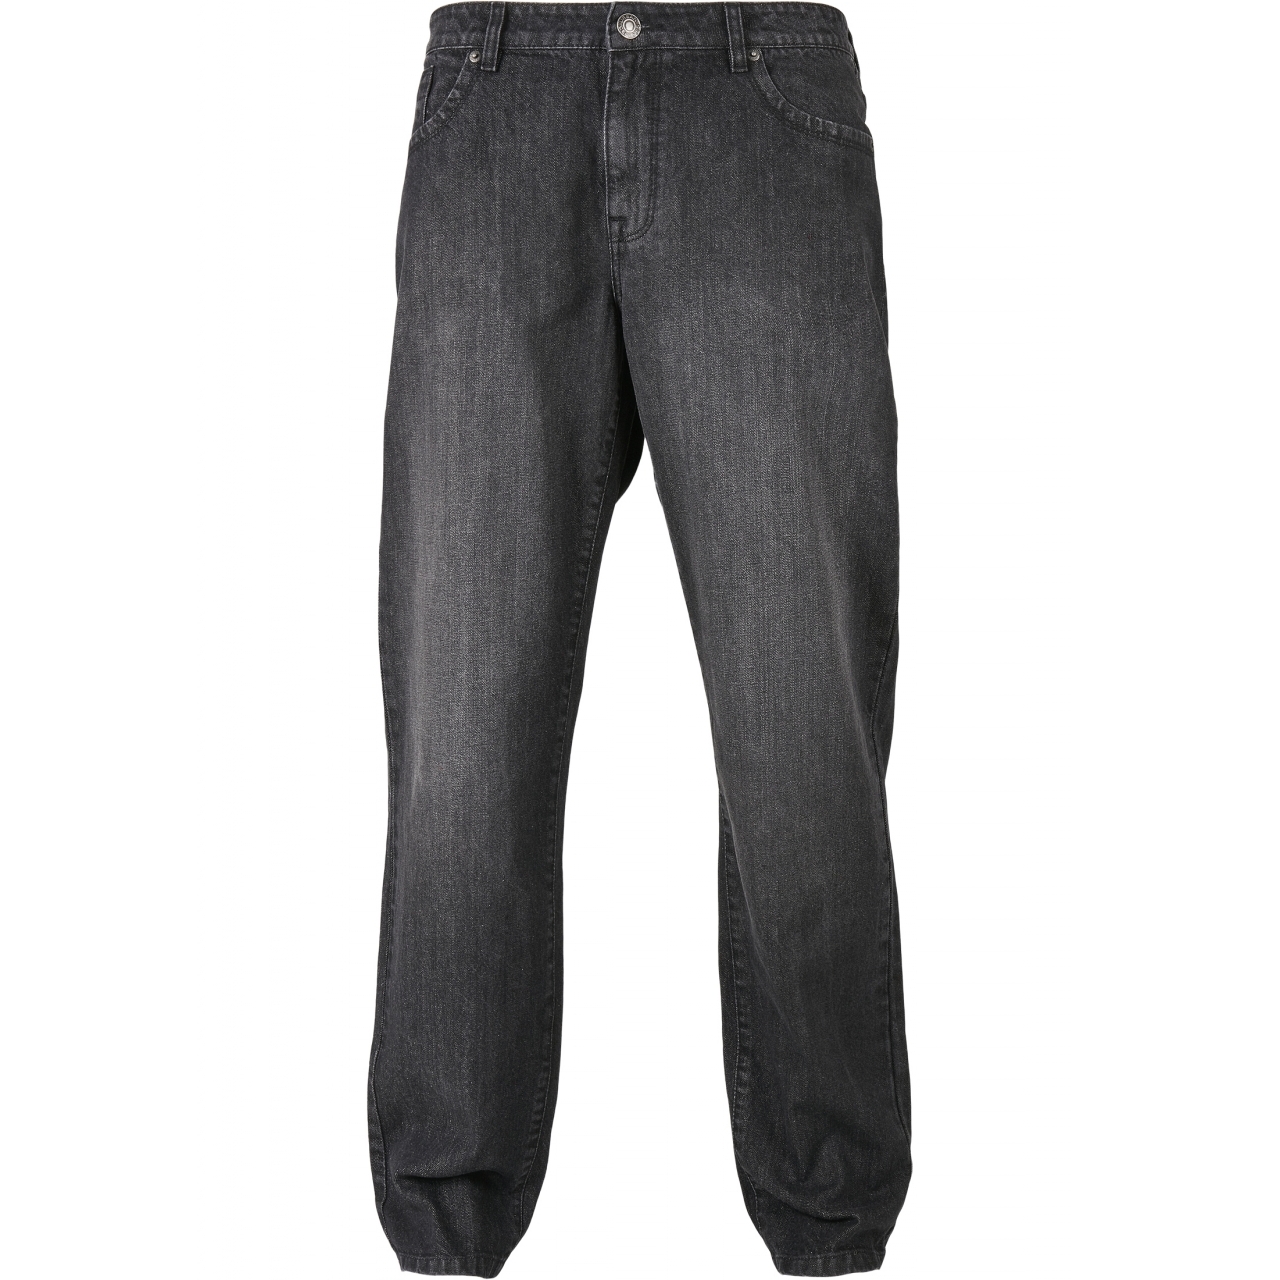 Džíny Urban Classics Loose Fit Jeans - černé, 28/32